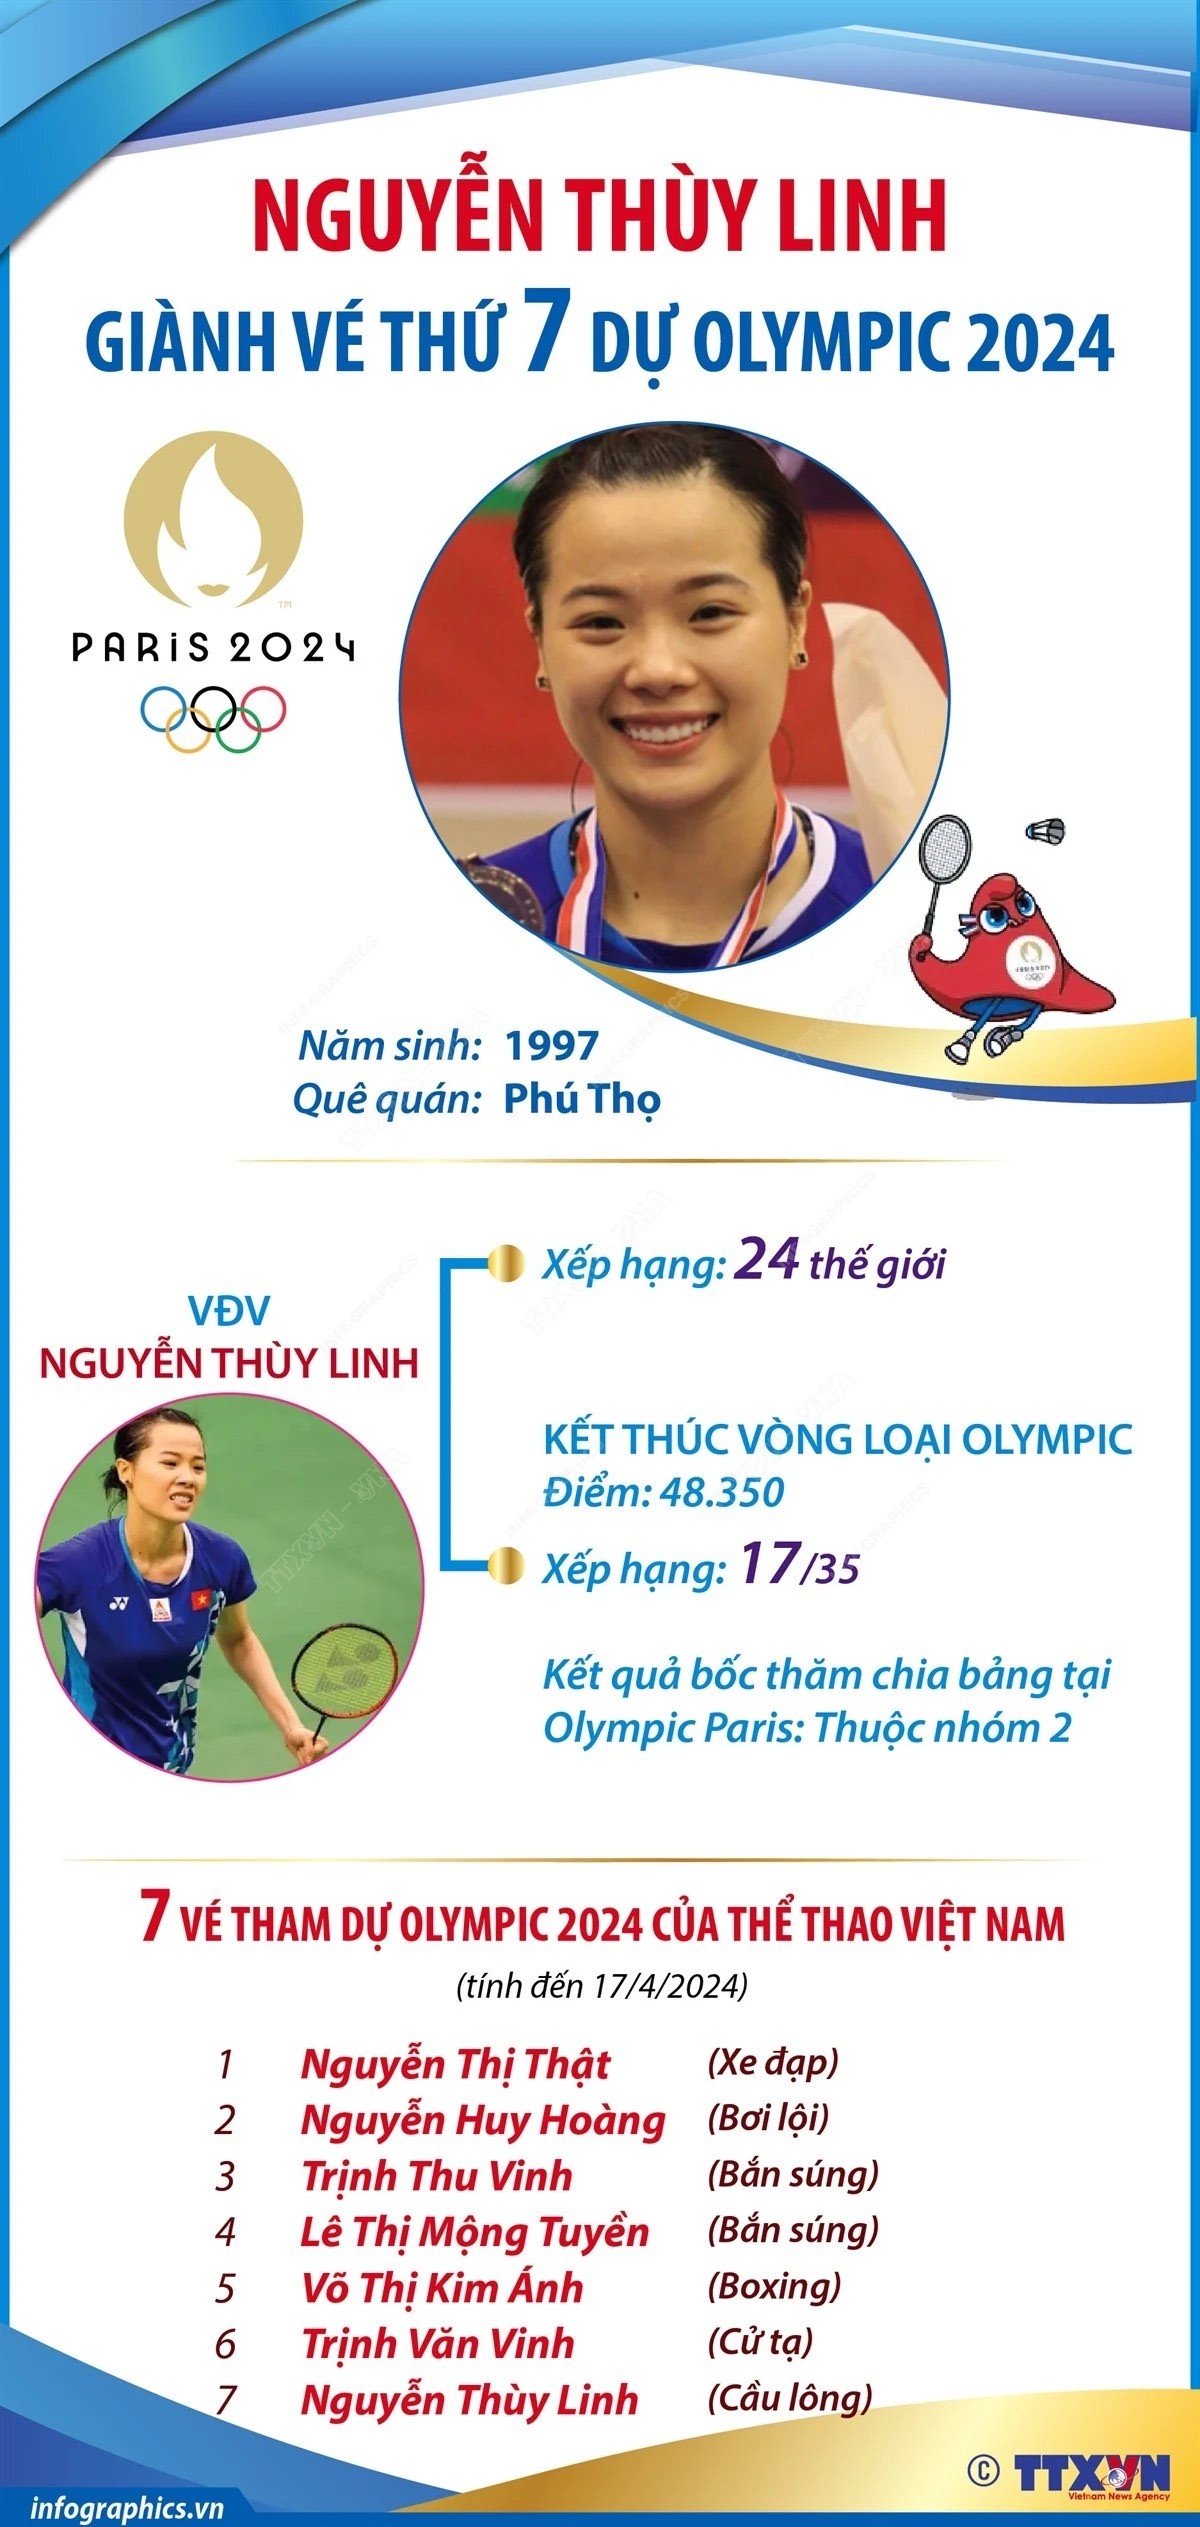 Tay vợt cầu lông Nguyễn Thùy Linh trở thành vận động viên thứ 7 của thể thao Việt Nam giành vé tham dự Olympic Paris 2024; đây là lần thứ 2 liên tiếp tay vợt người Phú Thọ góp mặt ở Olympic.